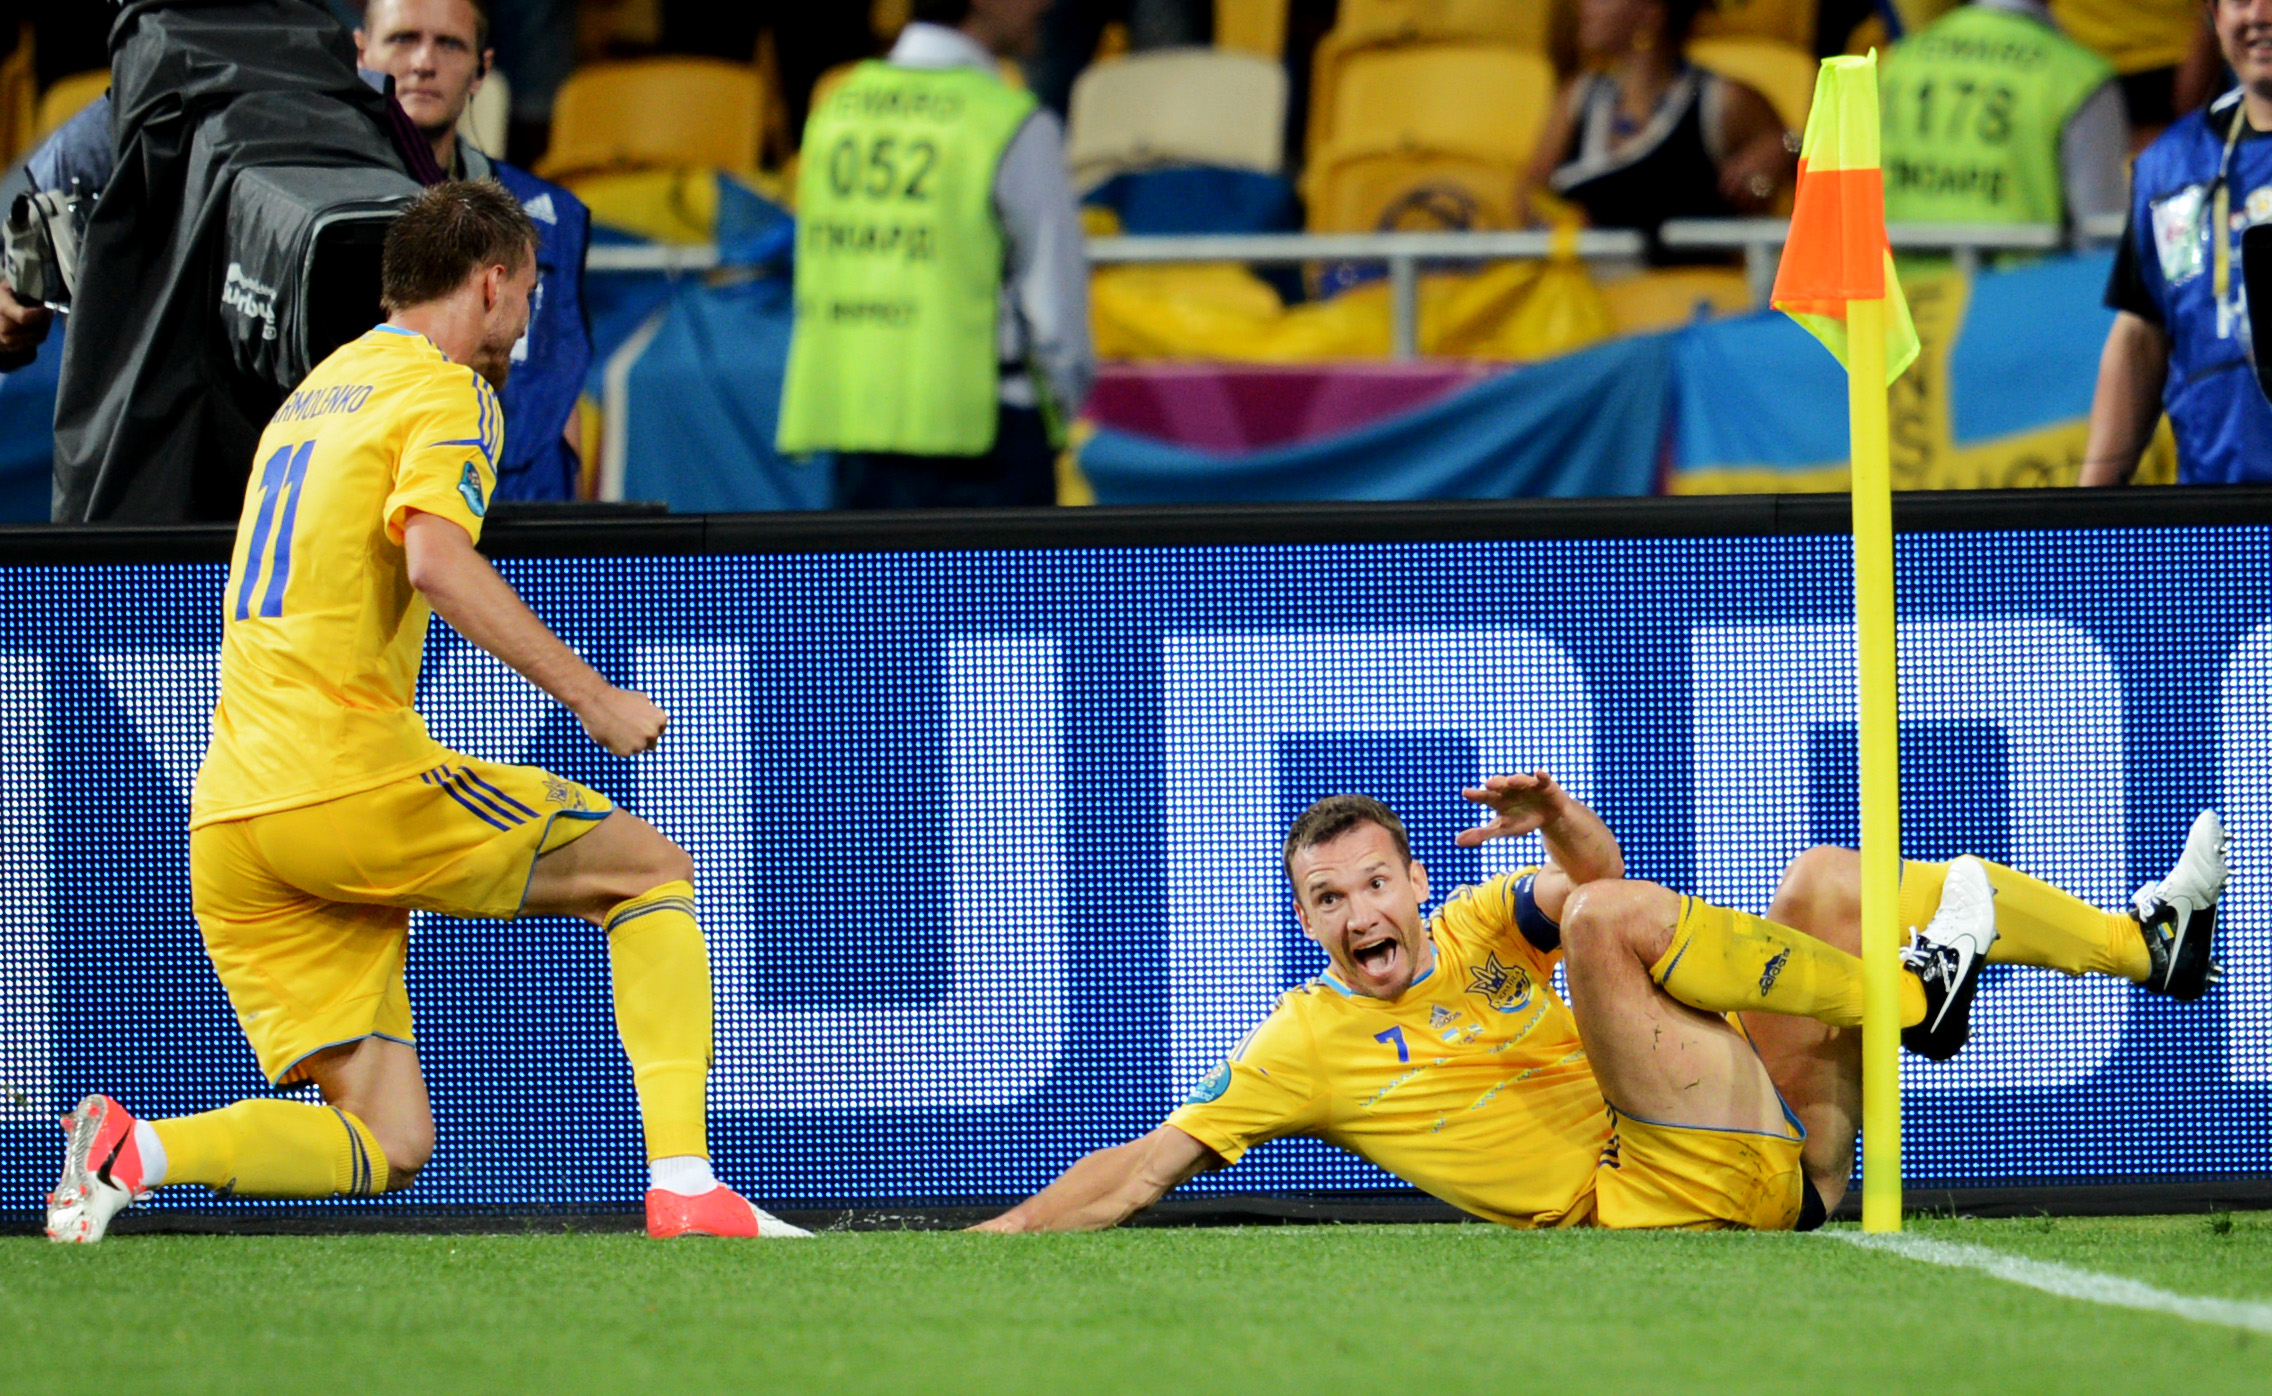 Sjevtjenko har nickat in två mål på fem minuter och gett Ukraina ledningen med 2-1.